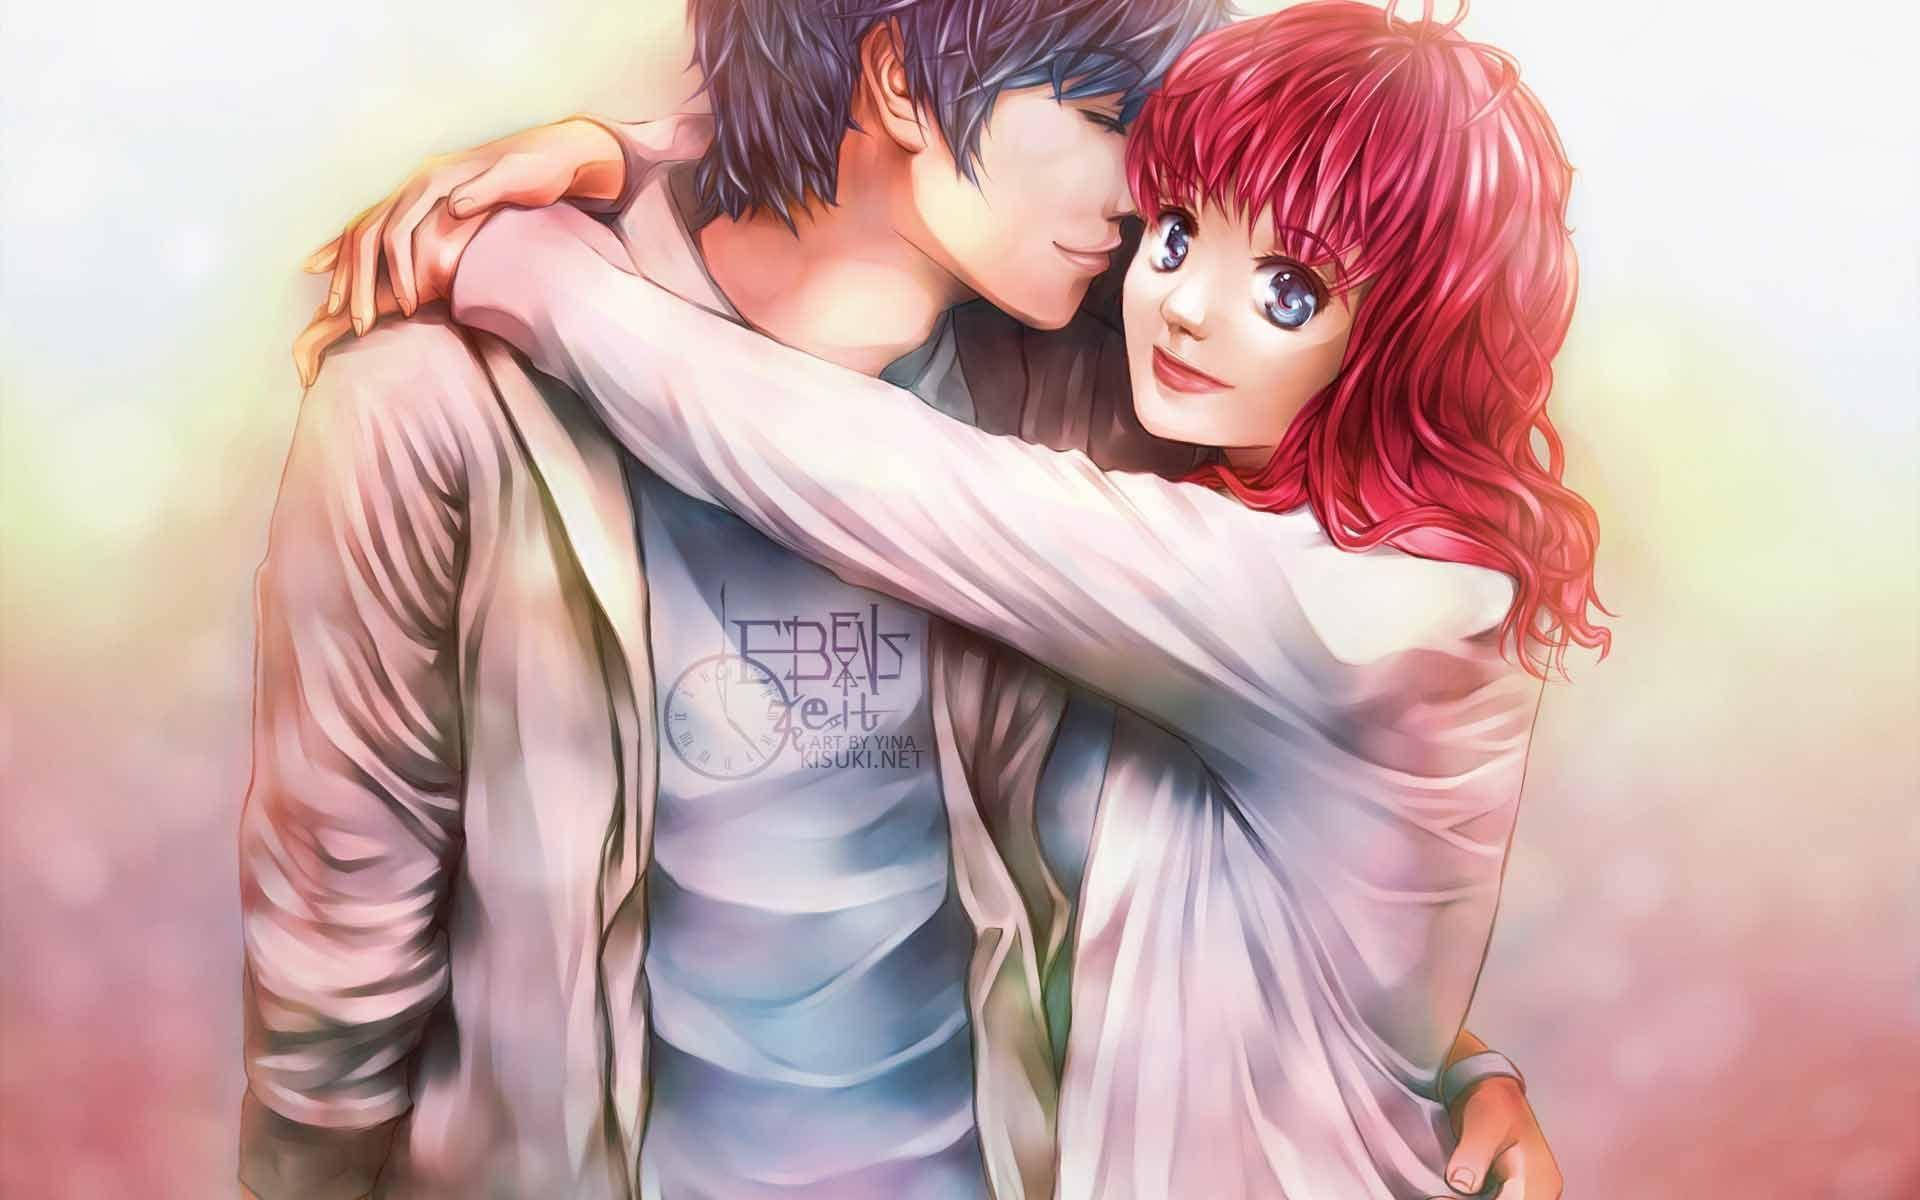 Pin on adorable anime couples anime couple sad hug HD phone wallpaper   Pxfuel